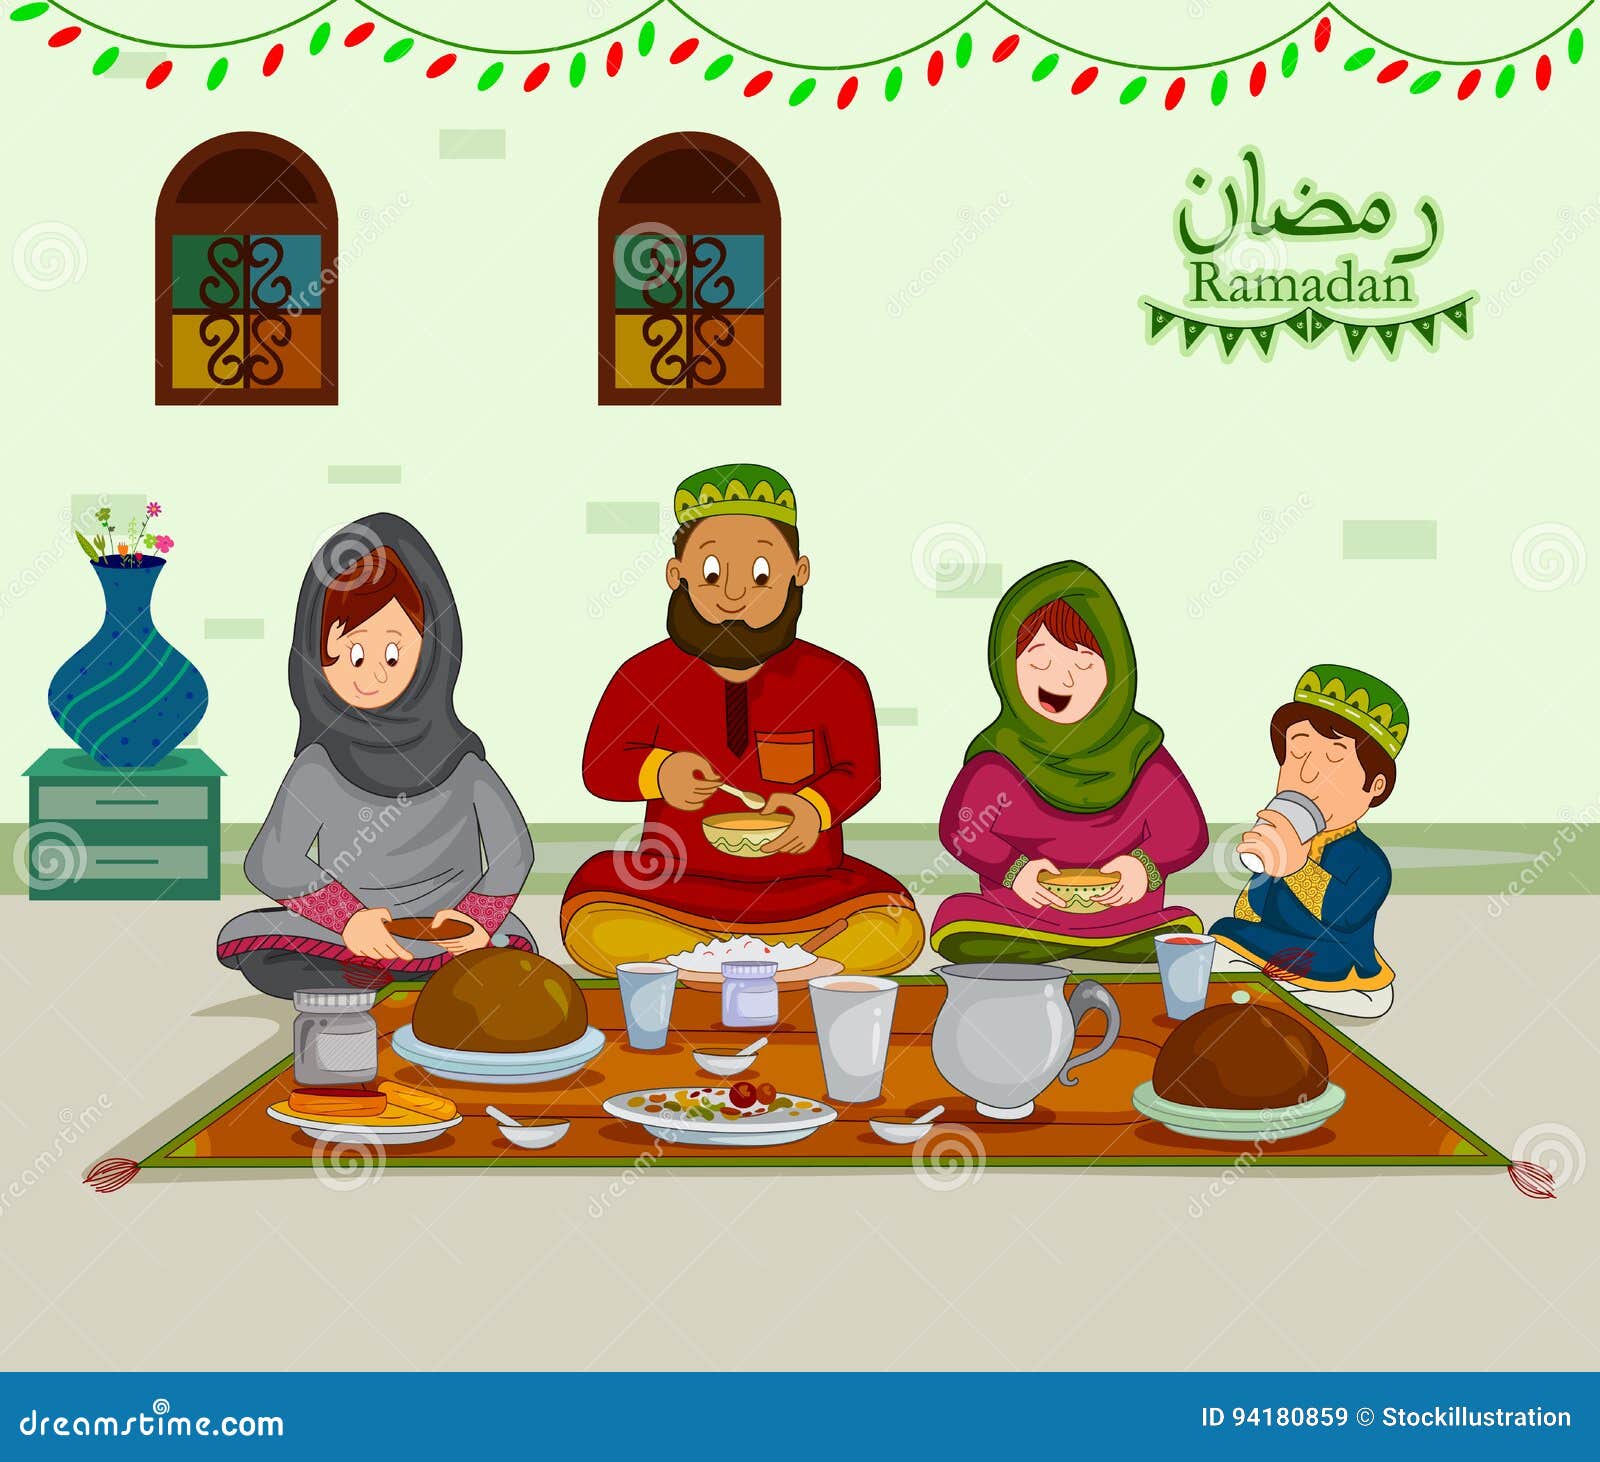 Детская ураза. Мусульманская семья вектор ифтар. Рамадан. Рамадан для детей. Мусульманская семья в Рамадан.